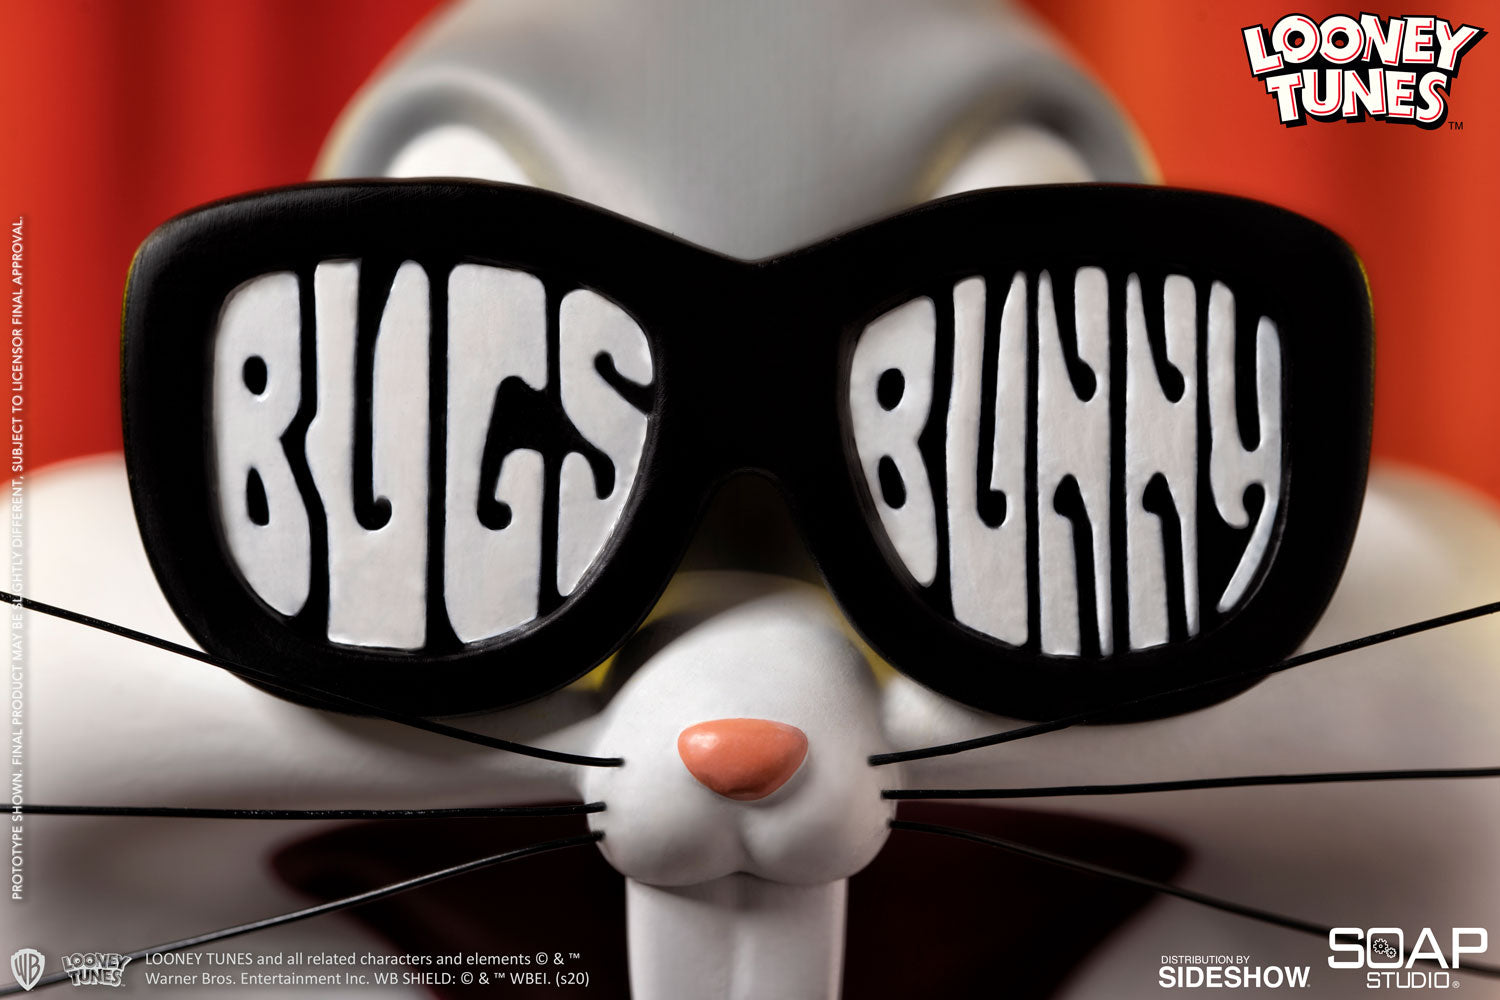 Soap Studio - Looney Tunes - Bugs Bunny Top Hat Bust